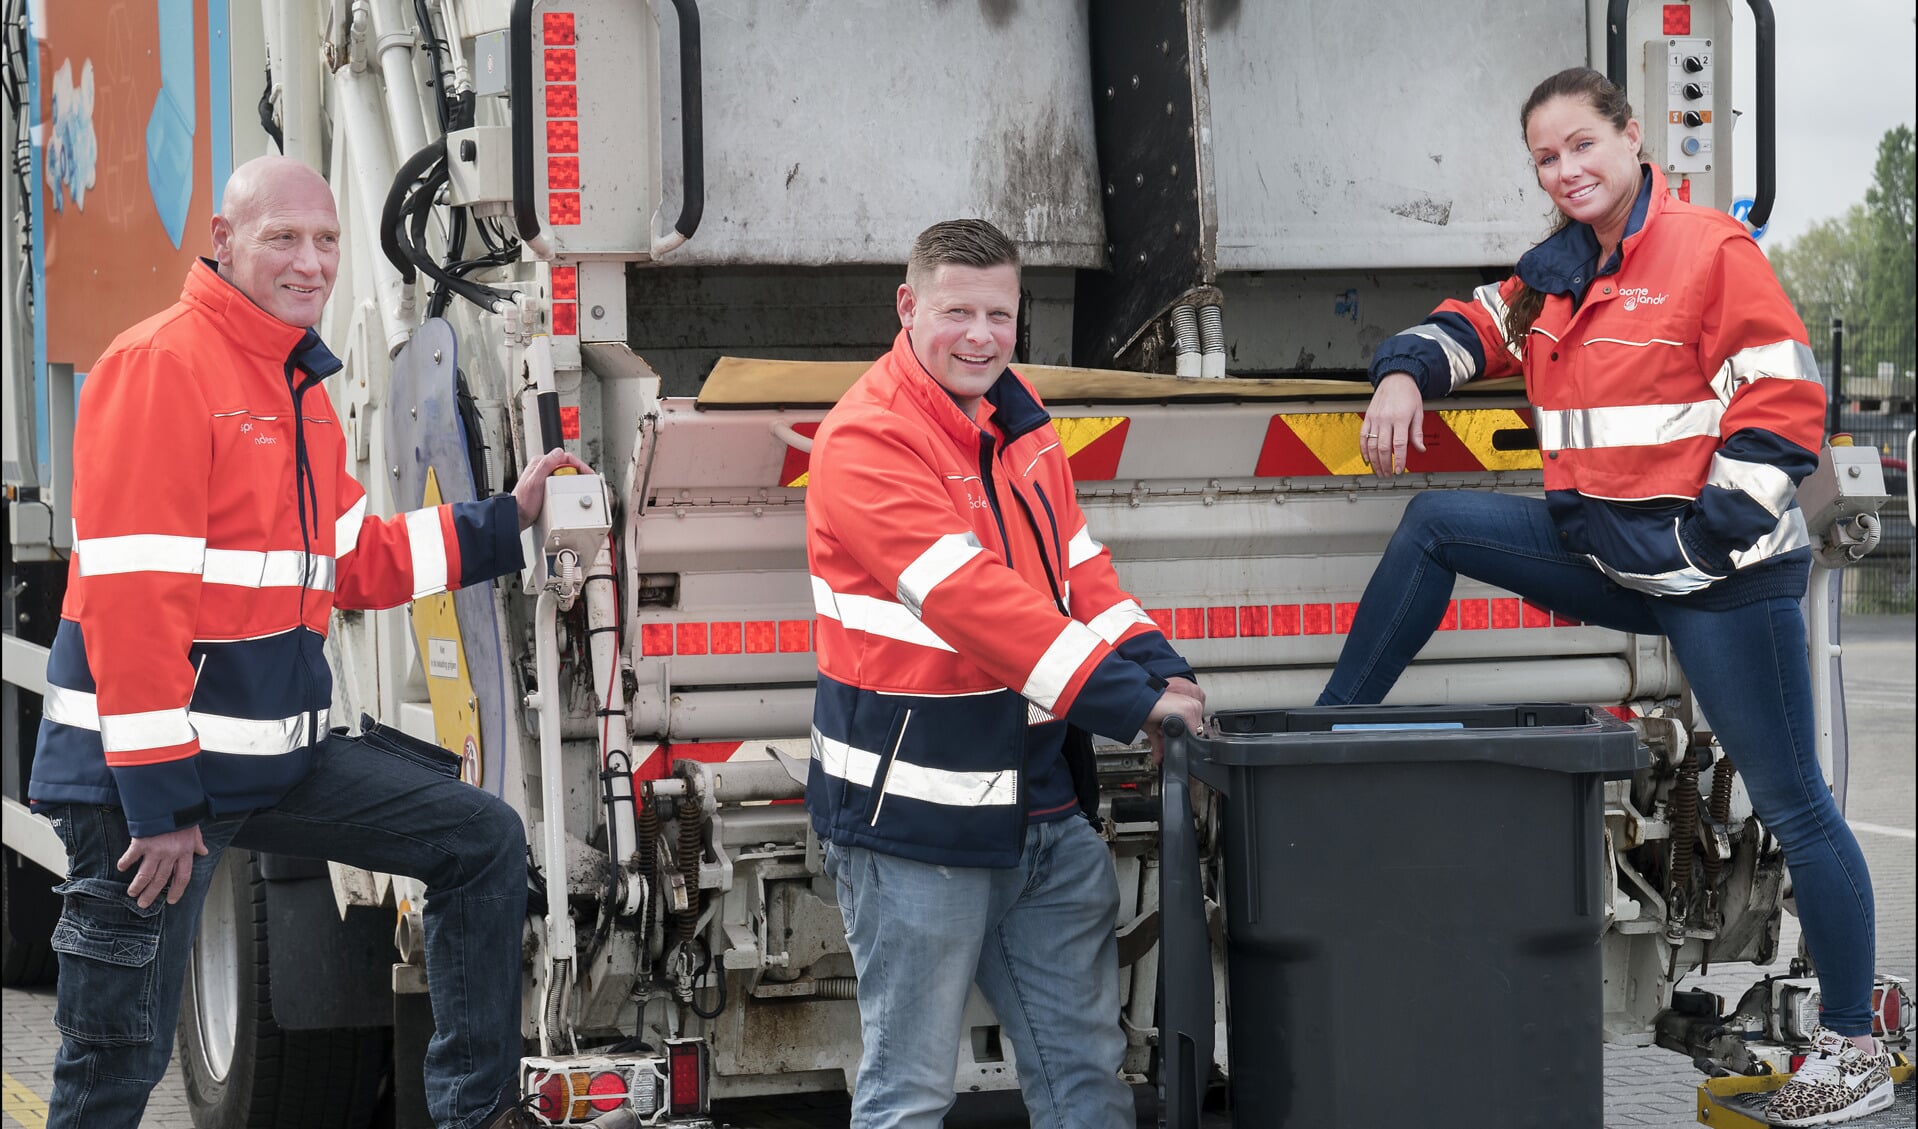 Afvalcoaches van Spaarnelanden Corjan de Winter, Hans Koelemeijer en Jane Veldmeijer bij de speciale inzamelwagen waarmee duocontainers worden geleegd. De afvalcoaches helpen Haarlemmers met afvalscheiding.